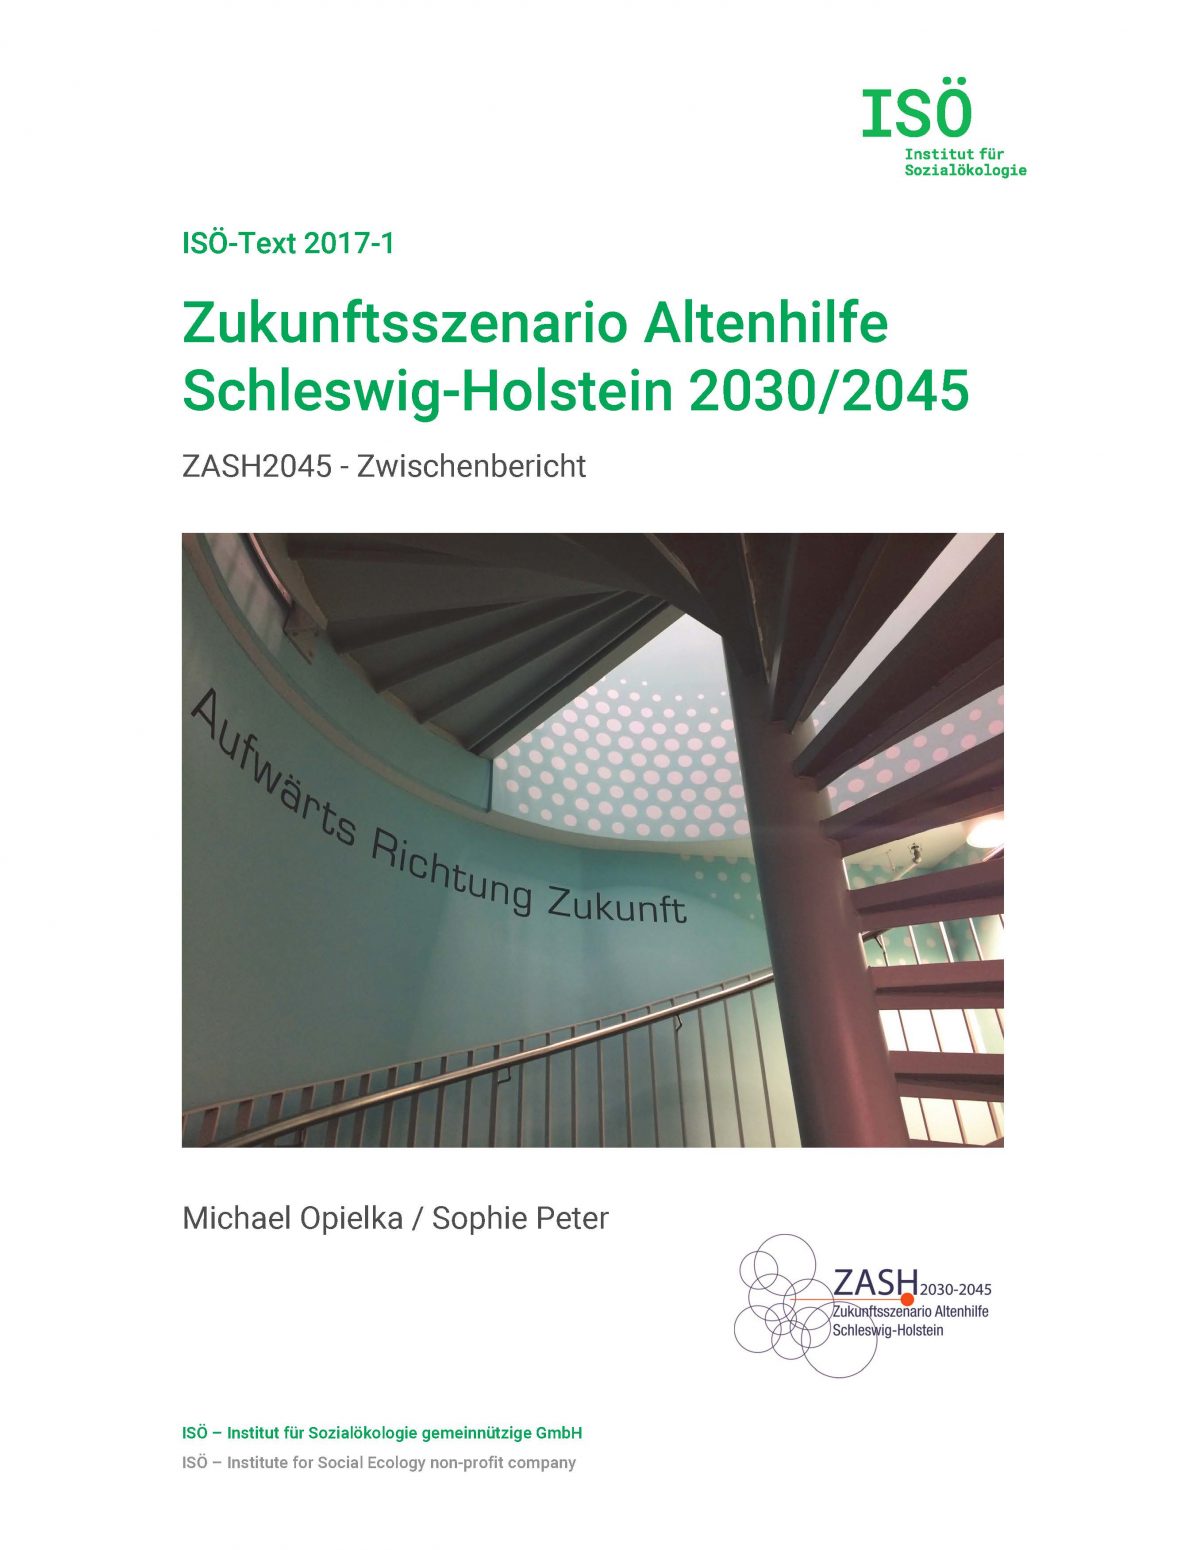 Michael Opielka/Sophie Peter, Zukunftsszenario Altenhilfe Schleswig-Holstein 2030/2045. Zwischenbericht (ISÖ-Text 2017-1) 